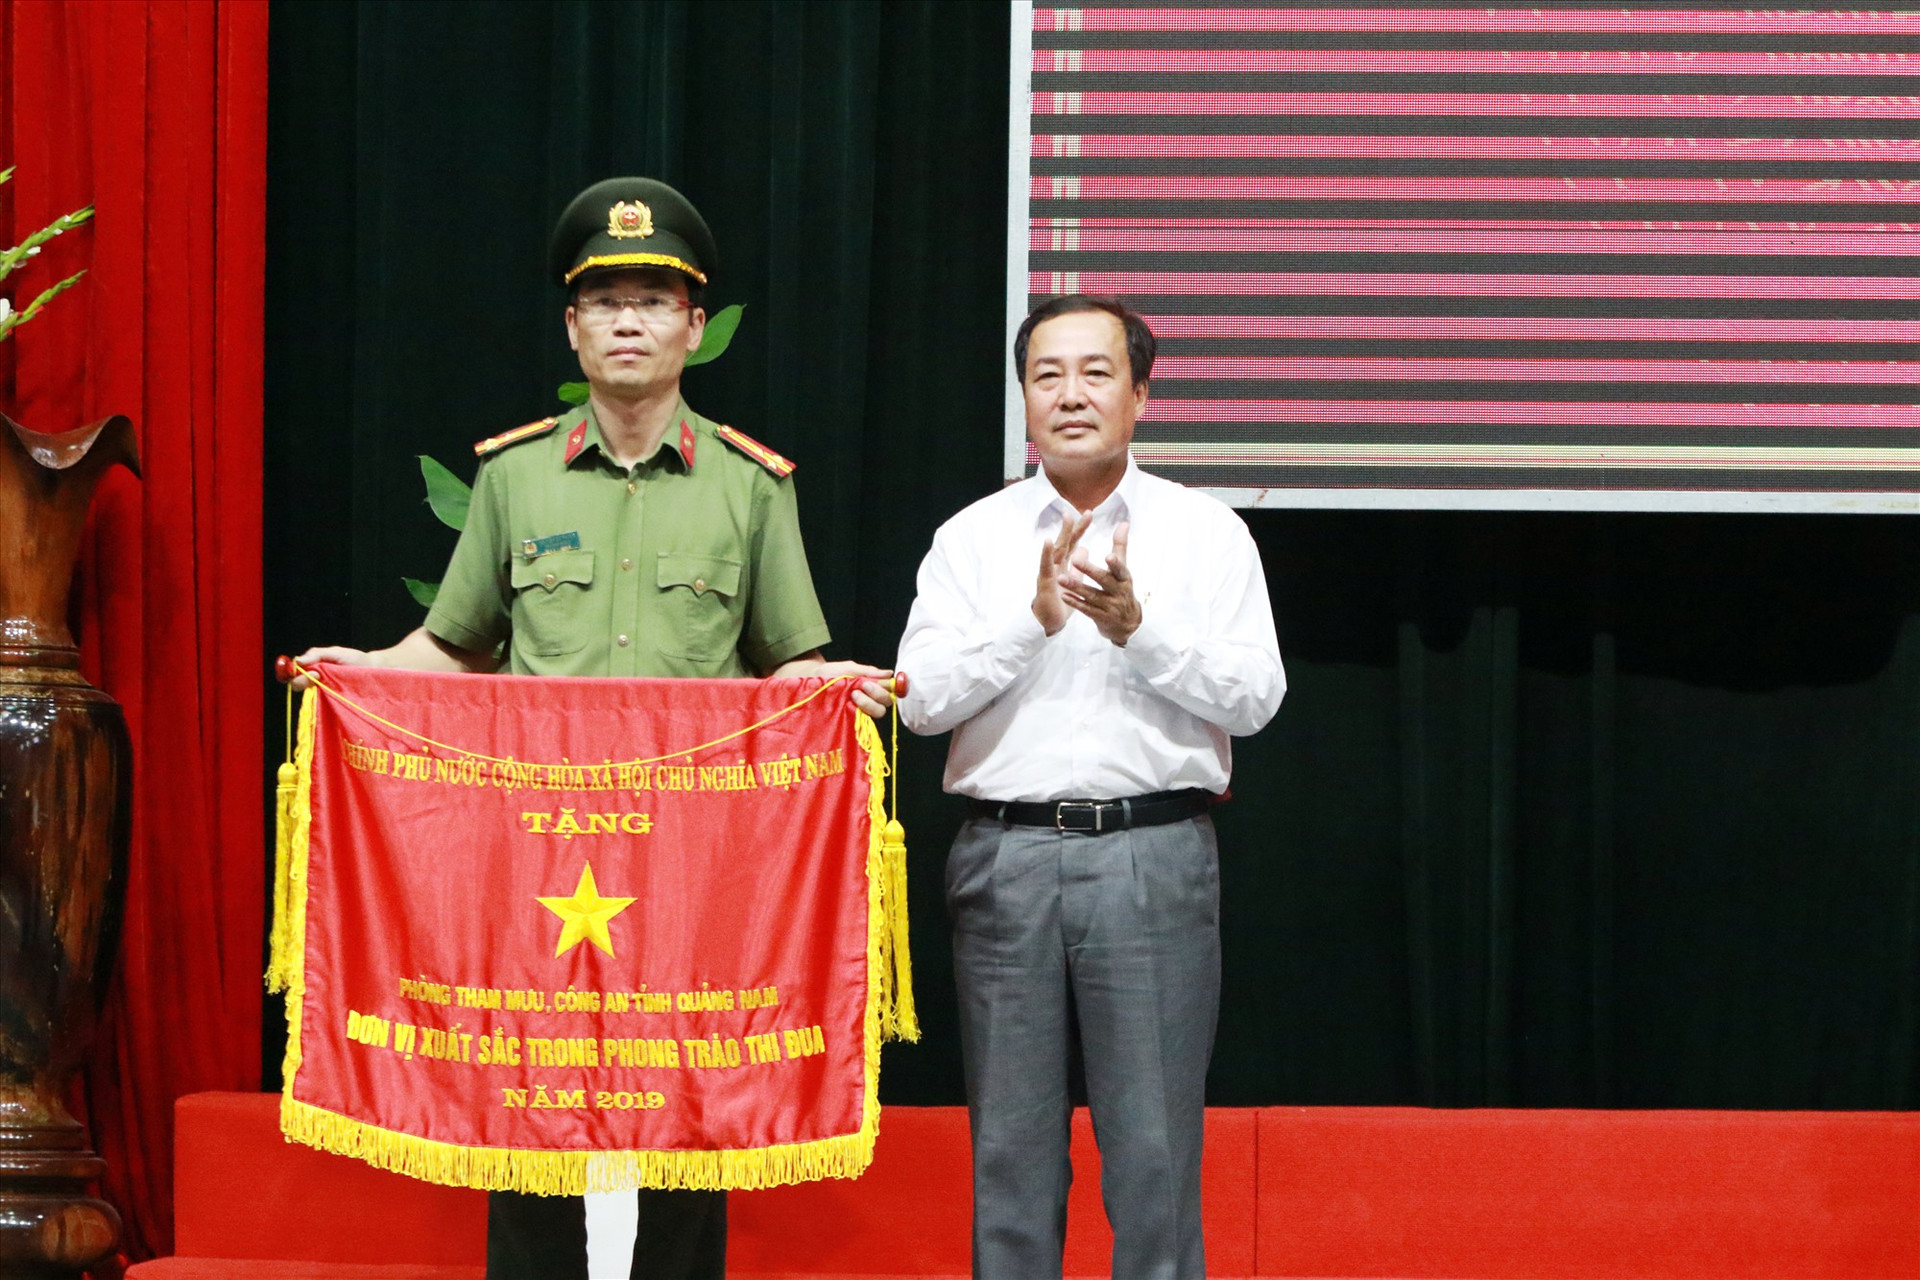 Phó Chủ tịch Thường trực UBND tỉnh Huỳnh Khánh Toàn thừa ủy nhiệm trao Cờ đơn vị xuất sắc trong phong trào thi đua năm 2019 của Chính phủ cho đại diện Phòng Tham mưu Công an tỉnh. Ảnh: T.C